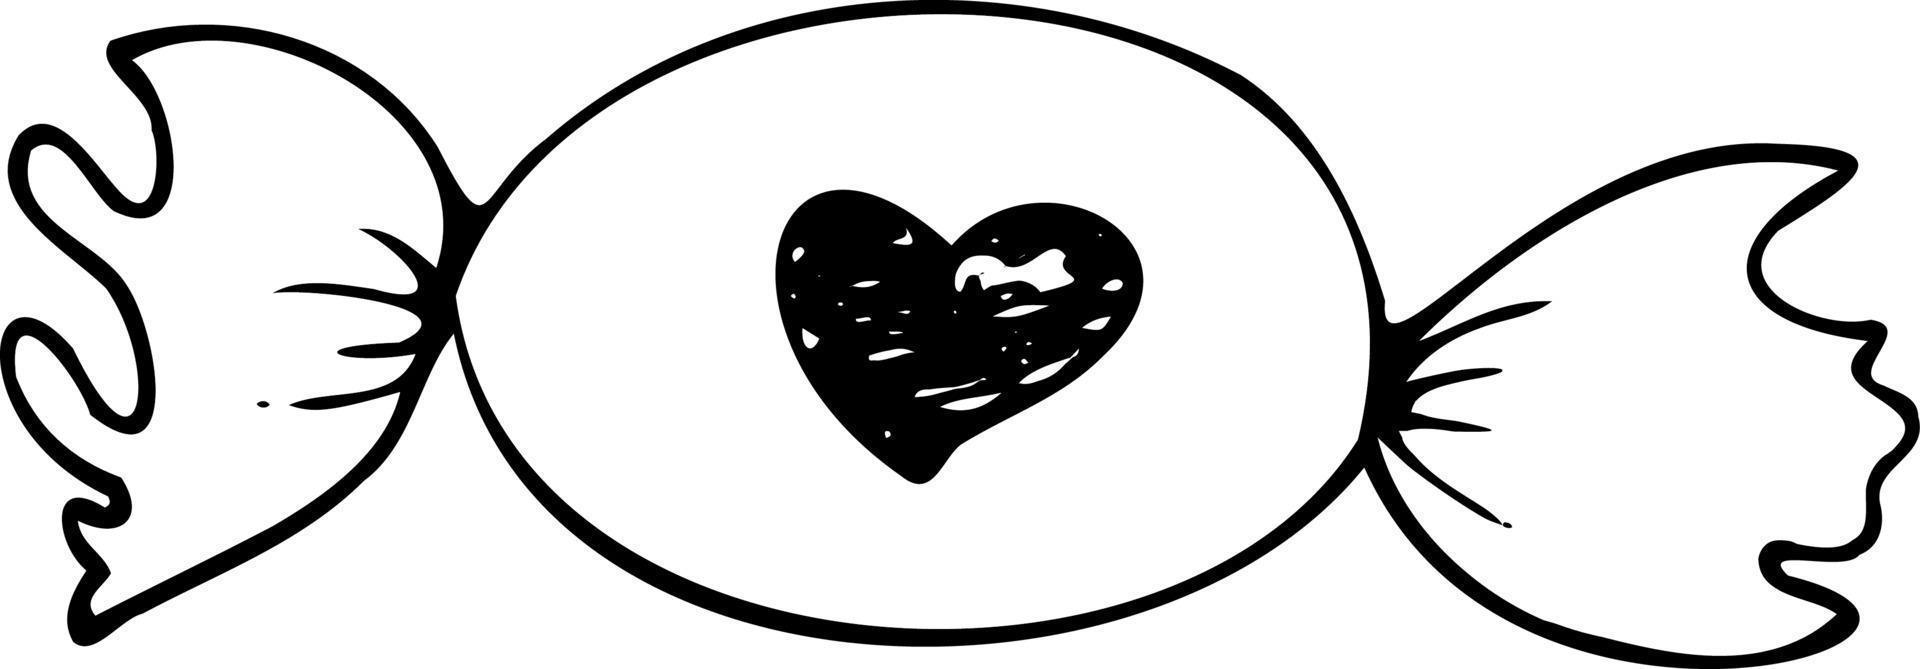 handzeichnung kontur herz süßigkeiten. Liebesmuster, Postkarte, abstrakter Herzhintergrund. vektor der herzen glücklicher valentinstag 14. februar. Hintergrund für Einladungen und Scrapbooking